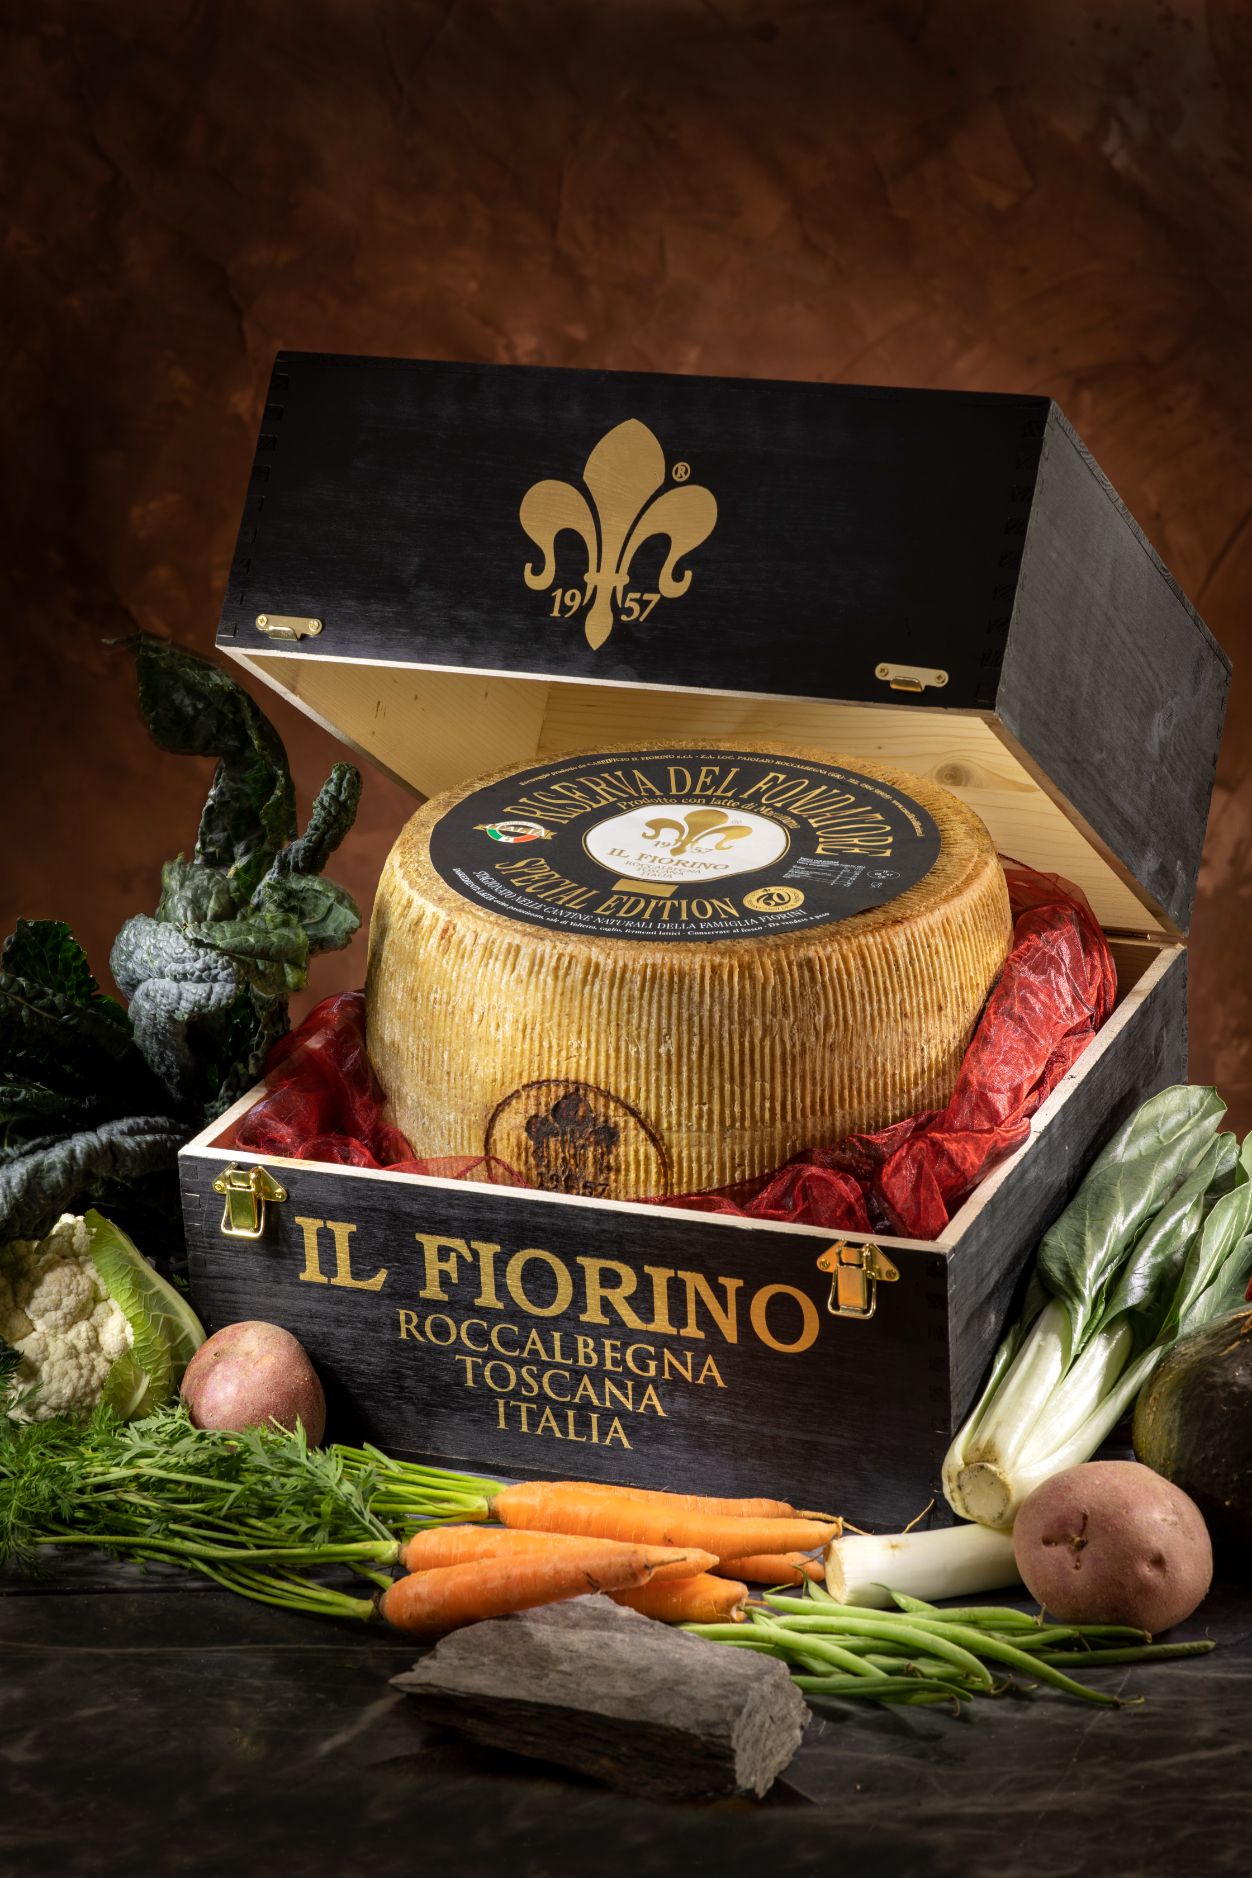 Agroalimentare: Il Fiorino è da 10 e lode: dal mondiale dei formaggi arrivano dieci medaglie per il Caseificio maremmano